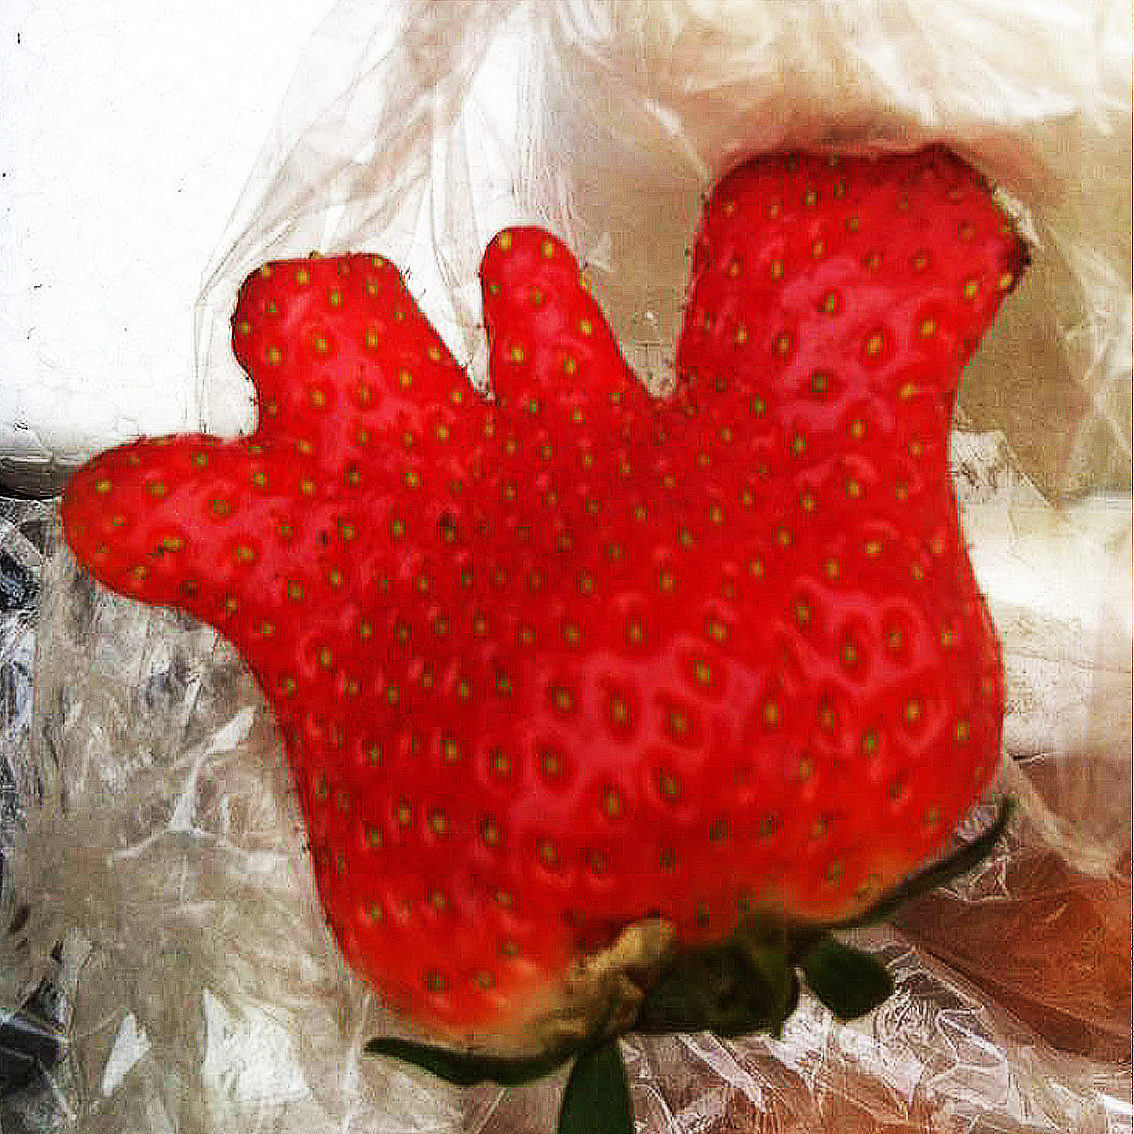 畸形草莓到底能不能吃?真的和激素有关吗?大家来围观真相